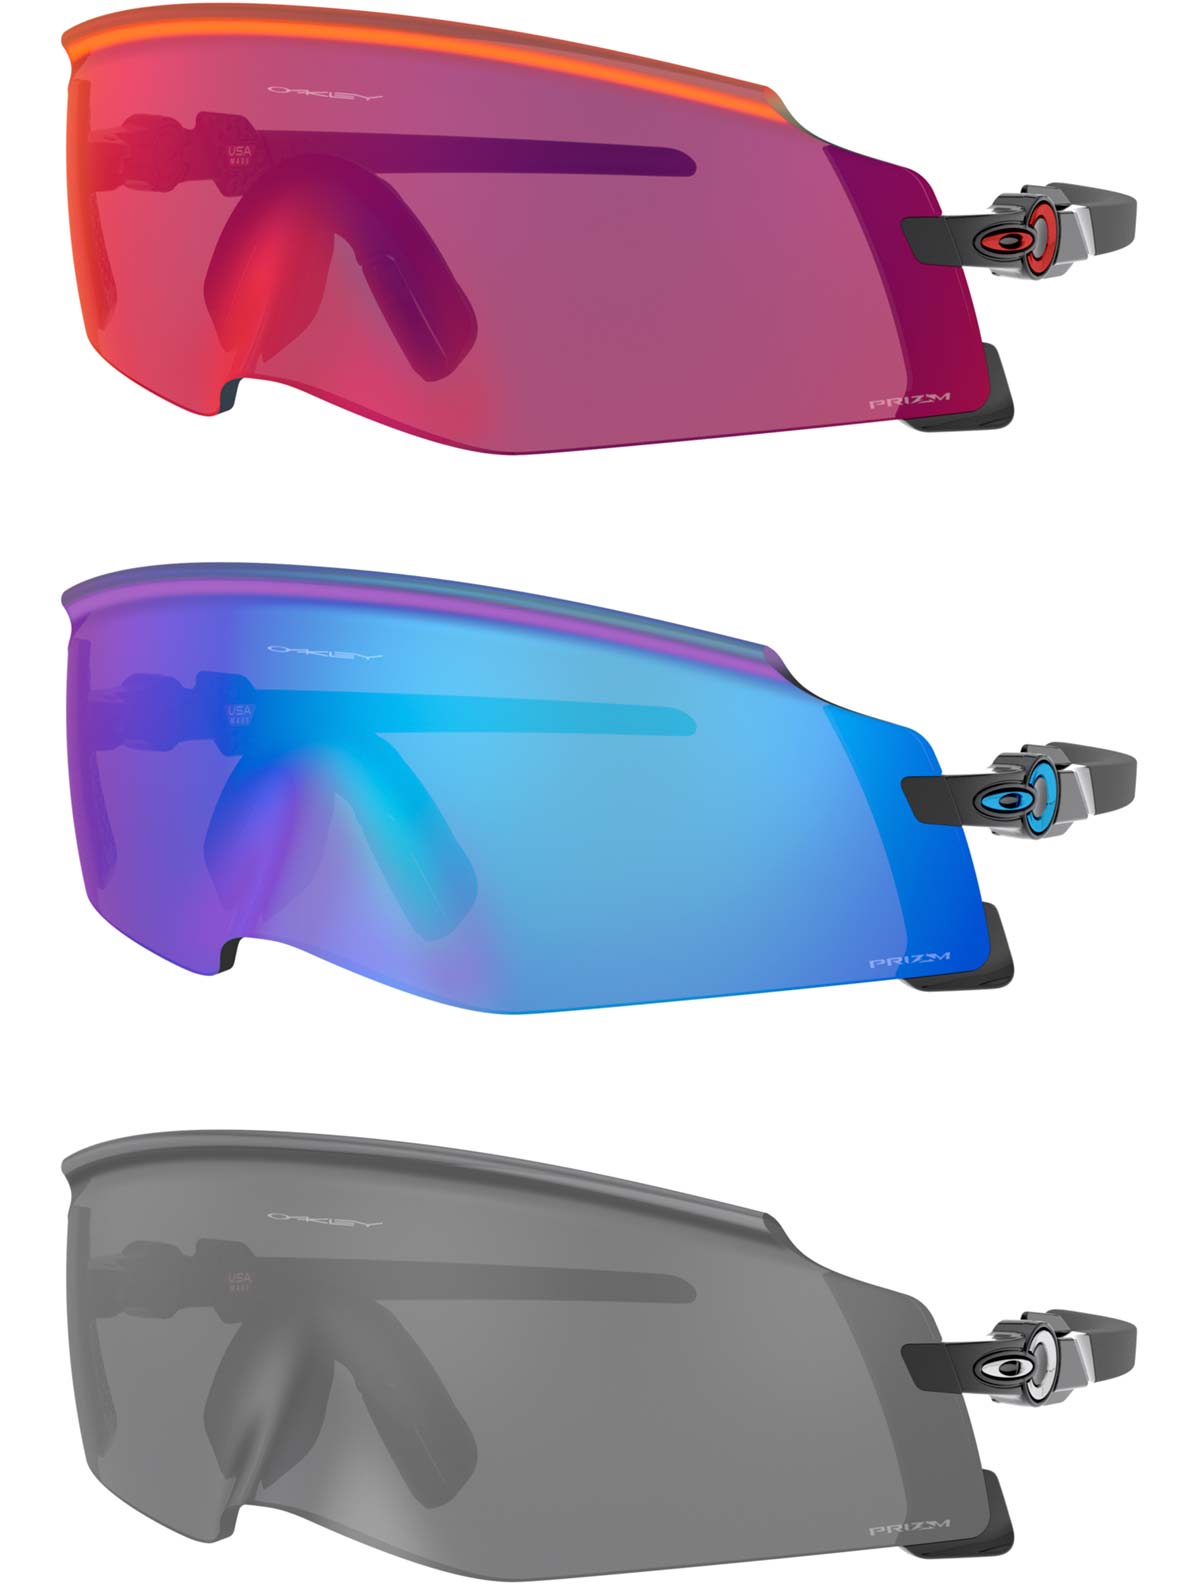 En TodoMountainBike: Oakley presenta las Kato, unas gafas deportivas que se adaptan como una máscara